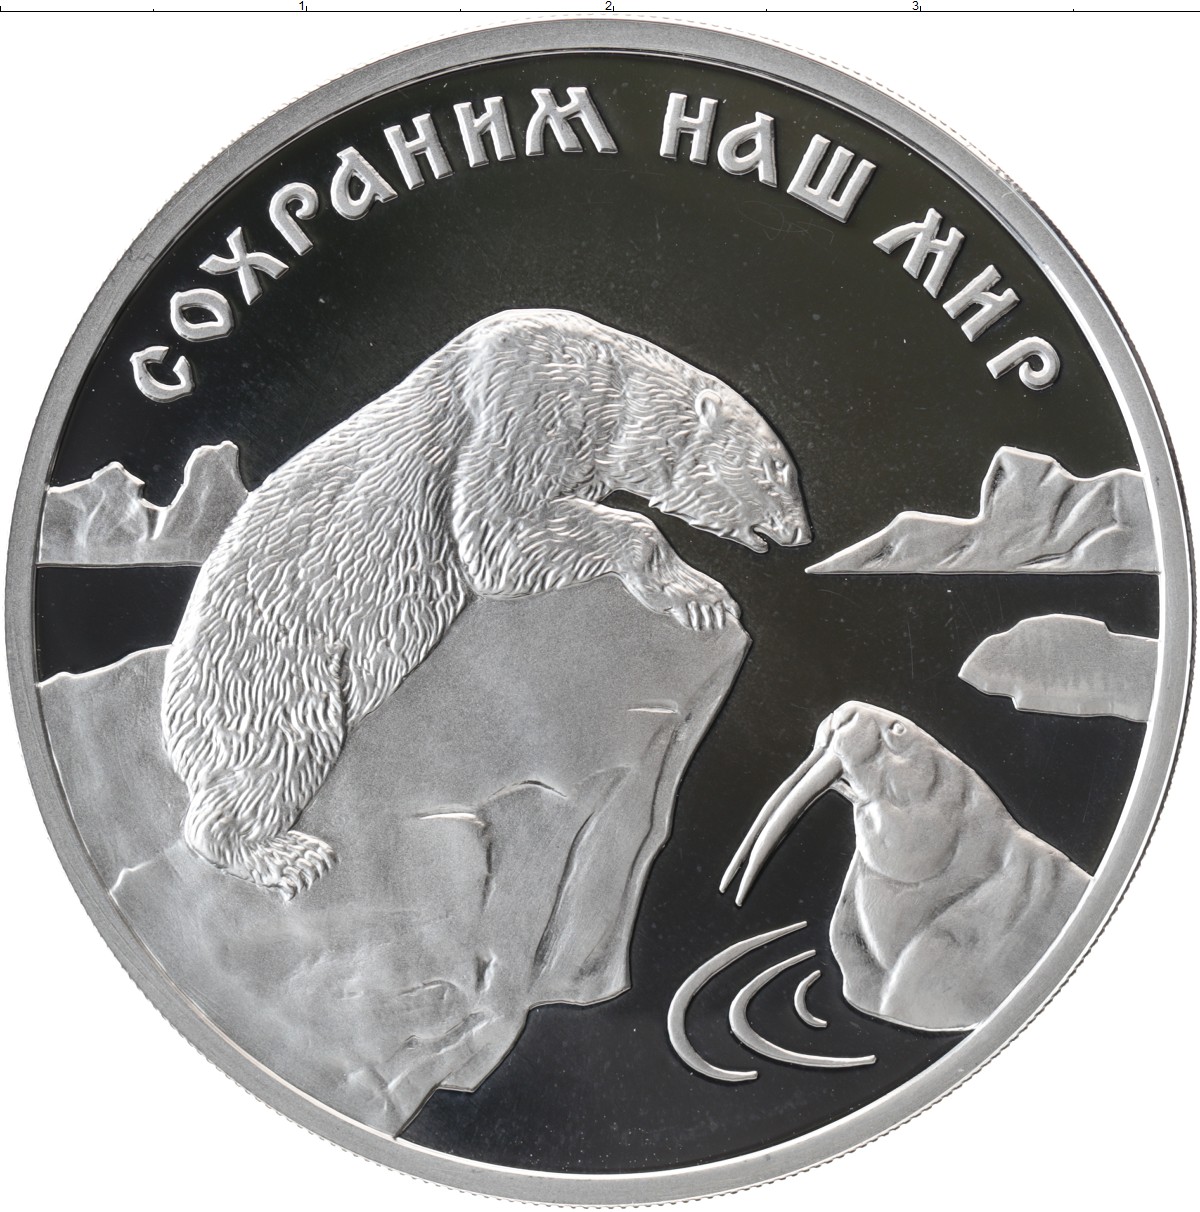 Монета сохраним наш мир. 3 Рубля 1997 ММД Proof "сохраним наш мир: Полярный белый медведь". Сохраним наш мир монета медведь. Сохраним наш мир монеты. Монета 3 рубля серебро.